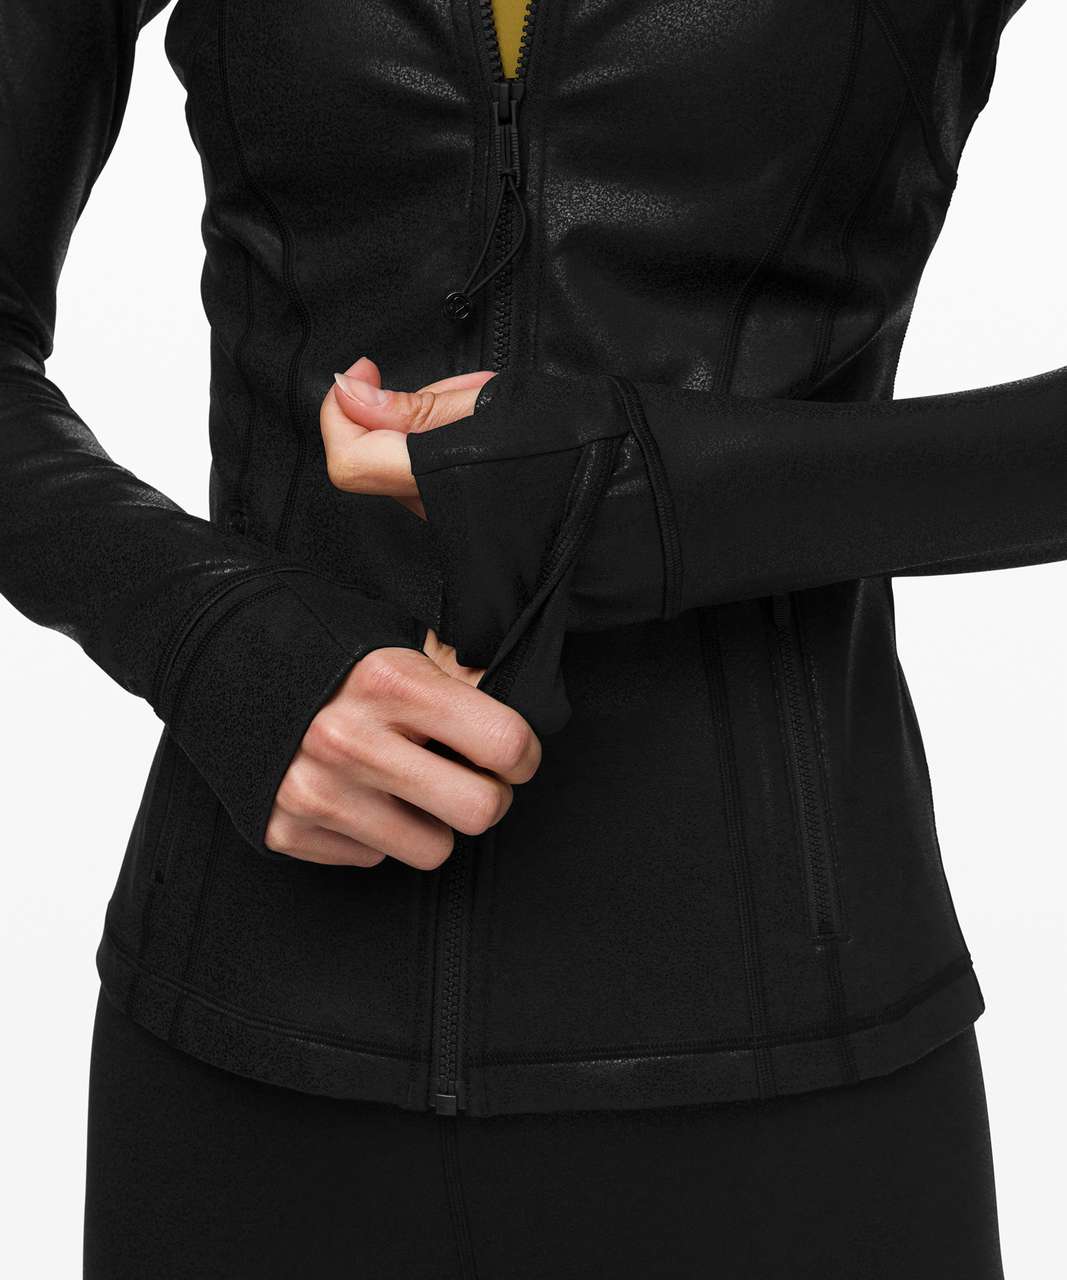 Lululemon Define Jacket *Spark - Luminosity Foil Print Black Black